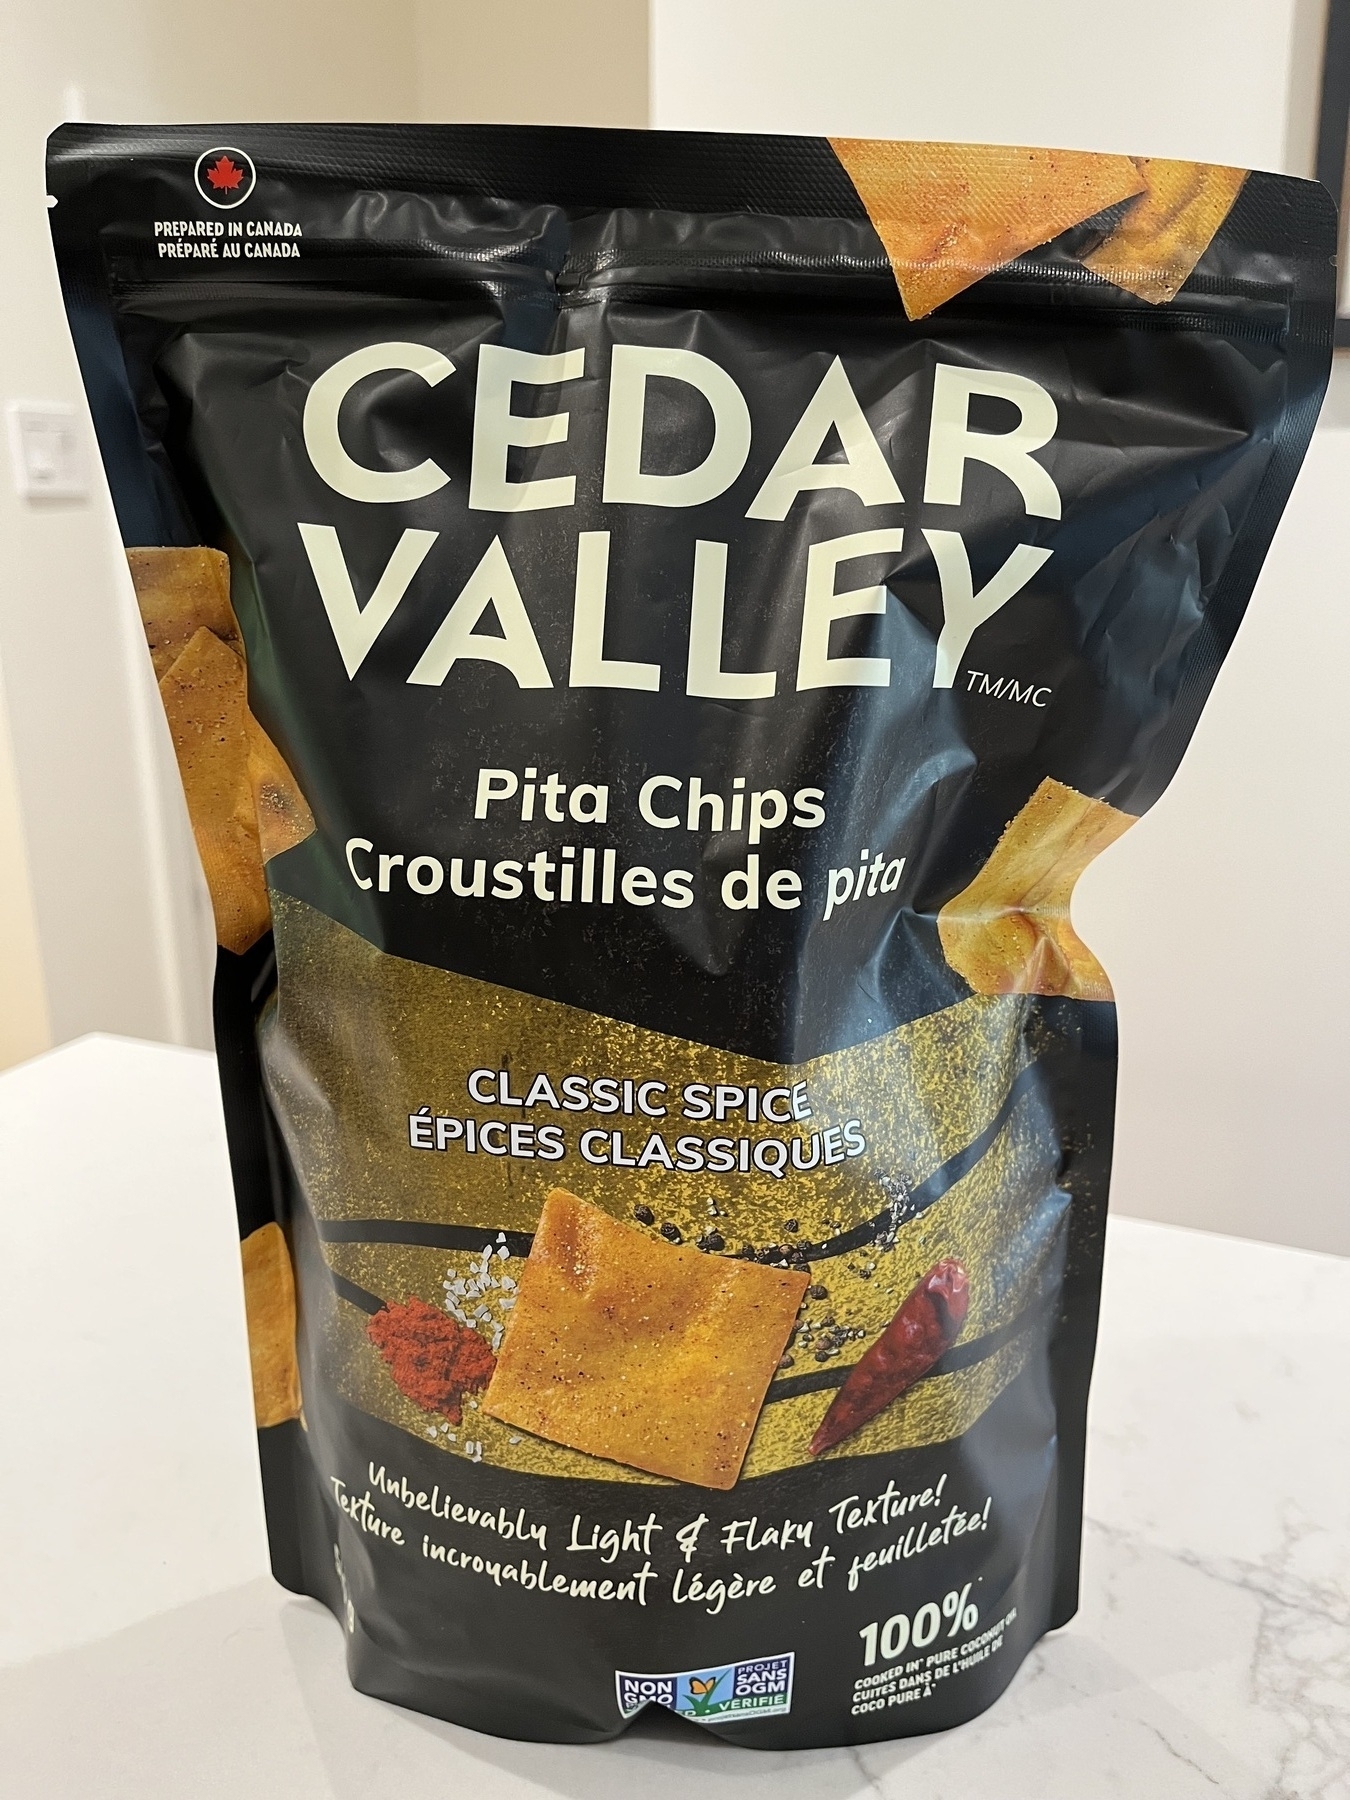 Bag of Cedar Valley pita chips